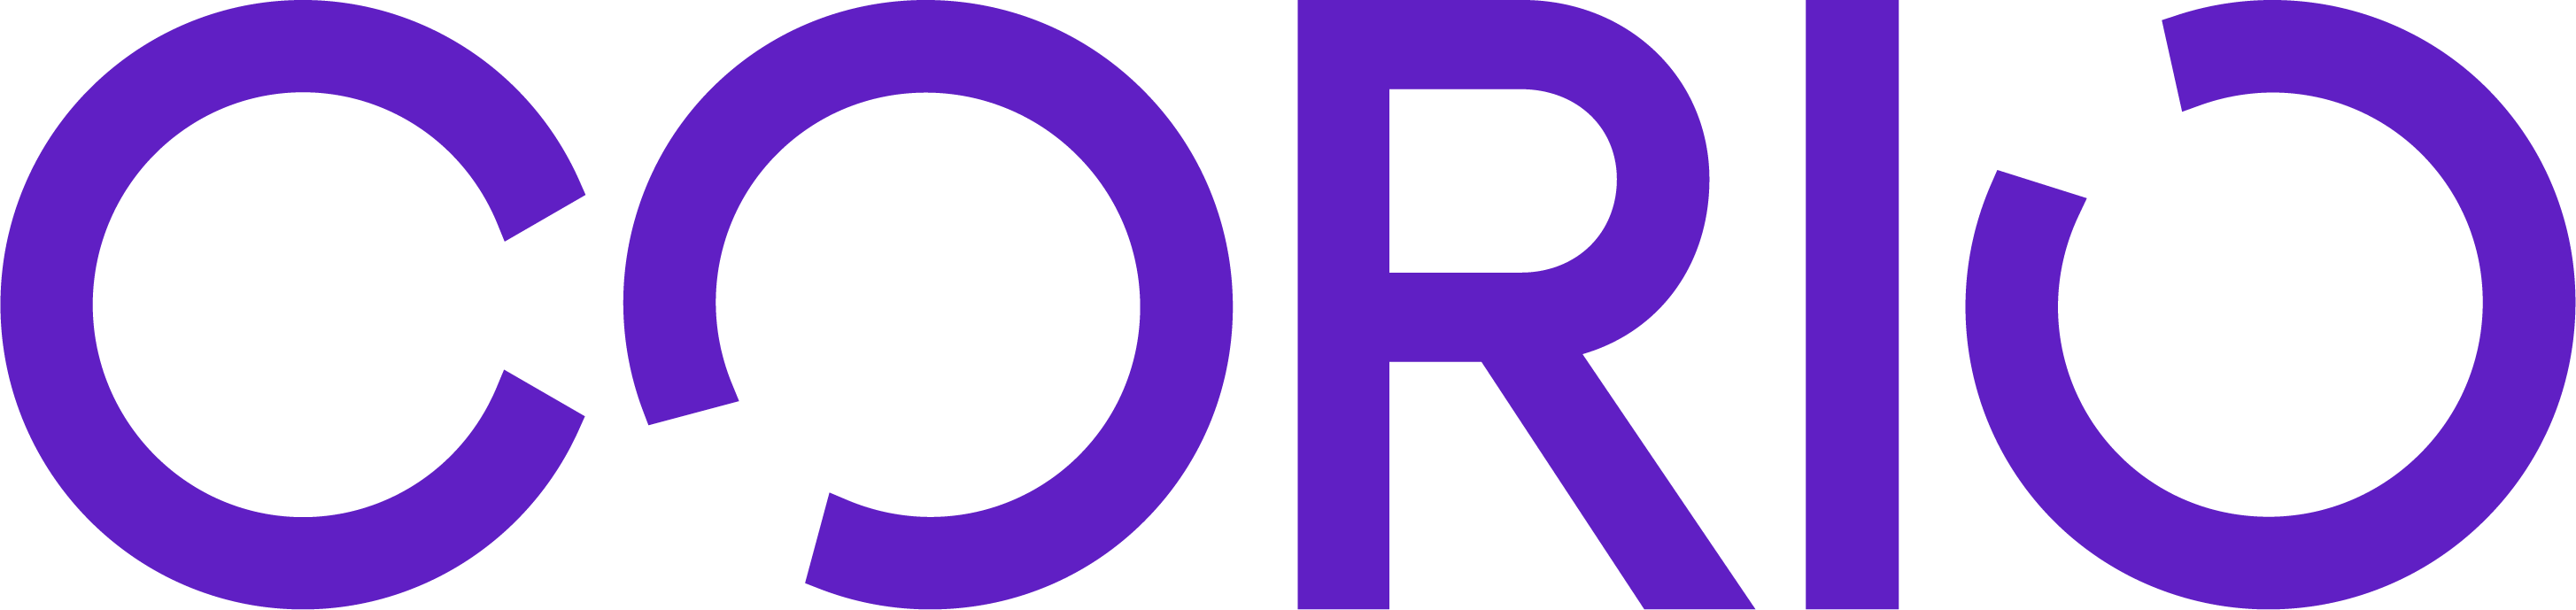 CORIO master logo rgb